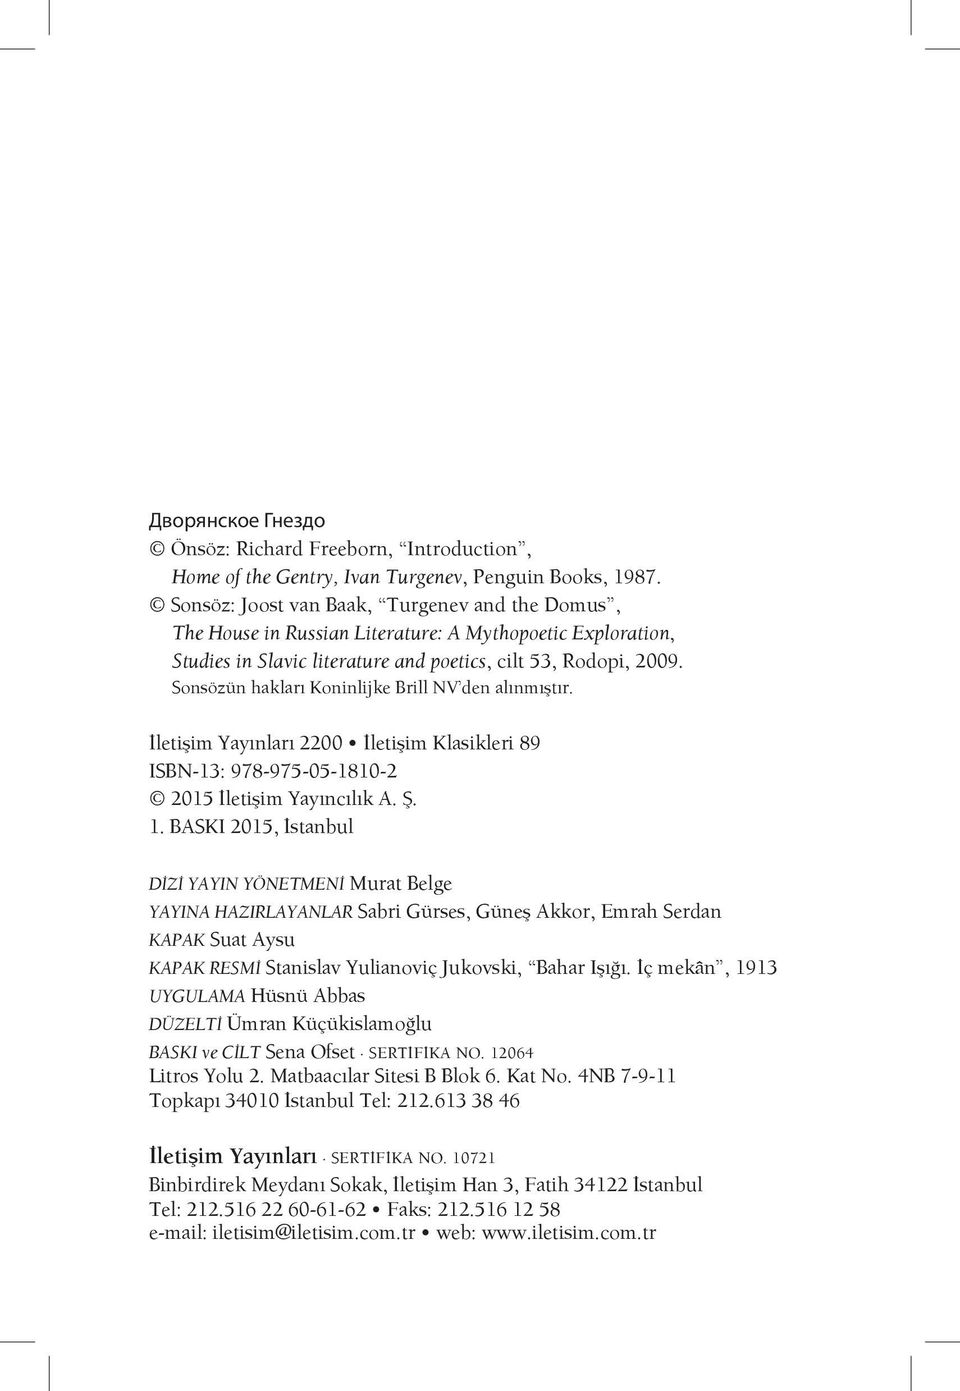 Sonsözün hakları Koninlijke Brill NV den alınmıştır. İletişim Yayınları 2200 İletişim Klasikleri 89 ISBN-13: 978-975-05-1810-2 2015 İletişim Yayıncılık A. Ş. 1.